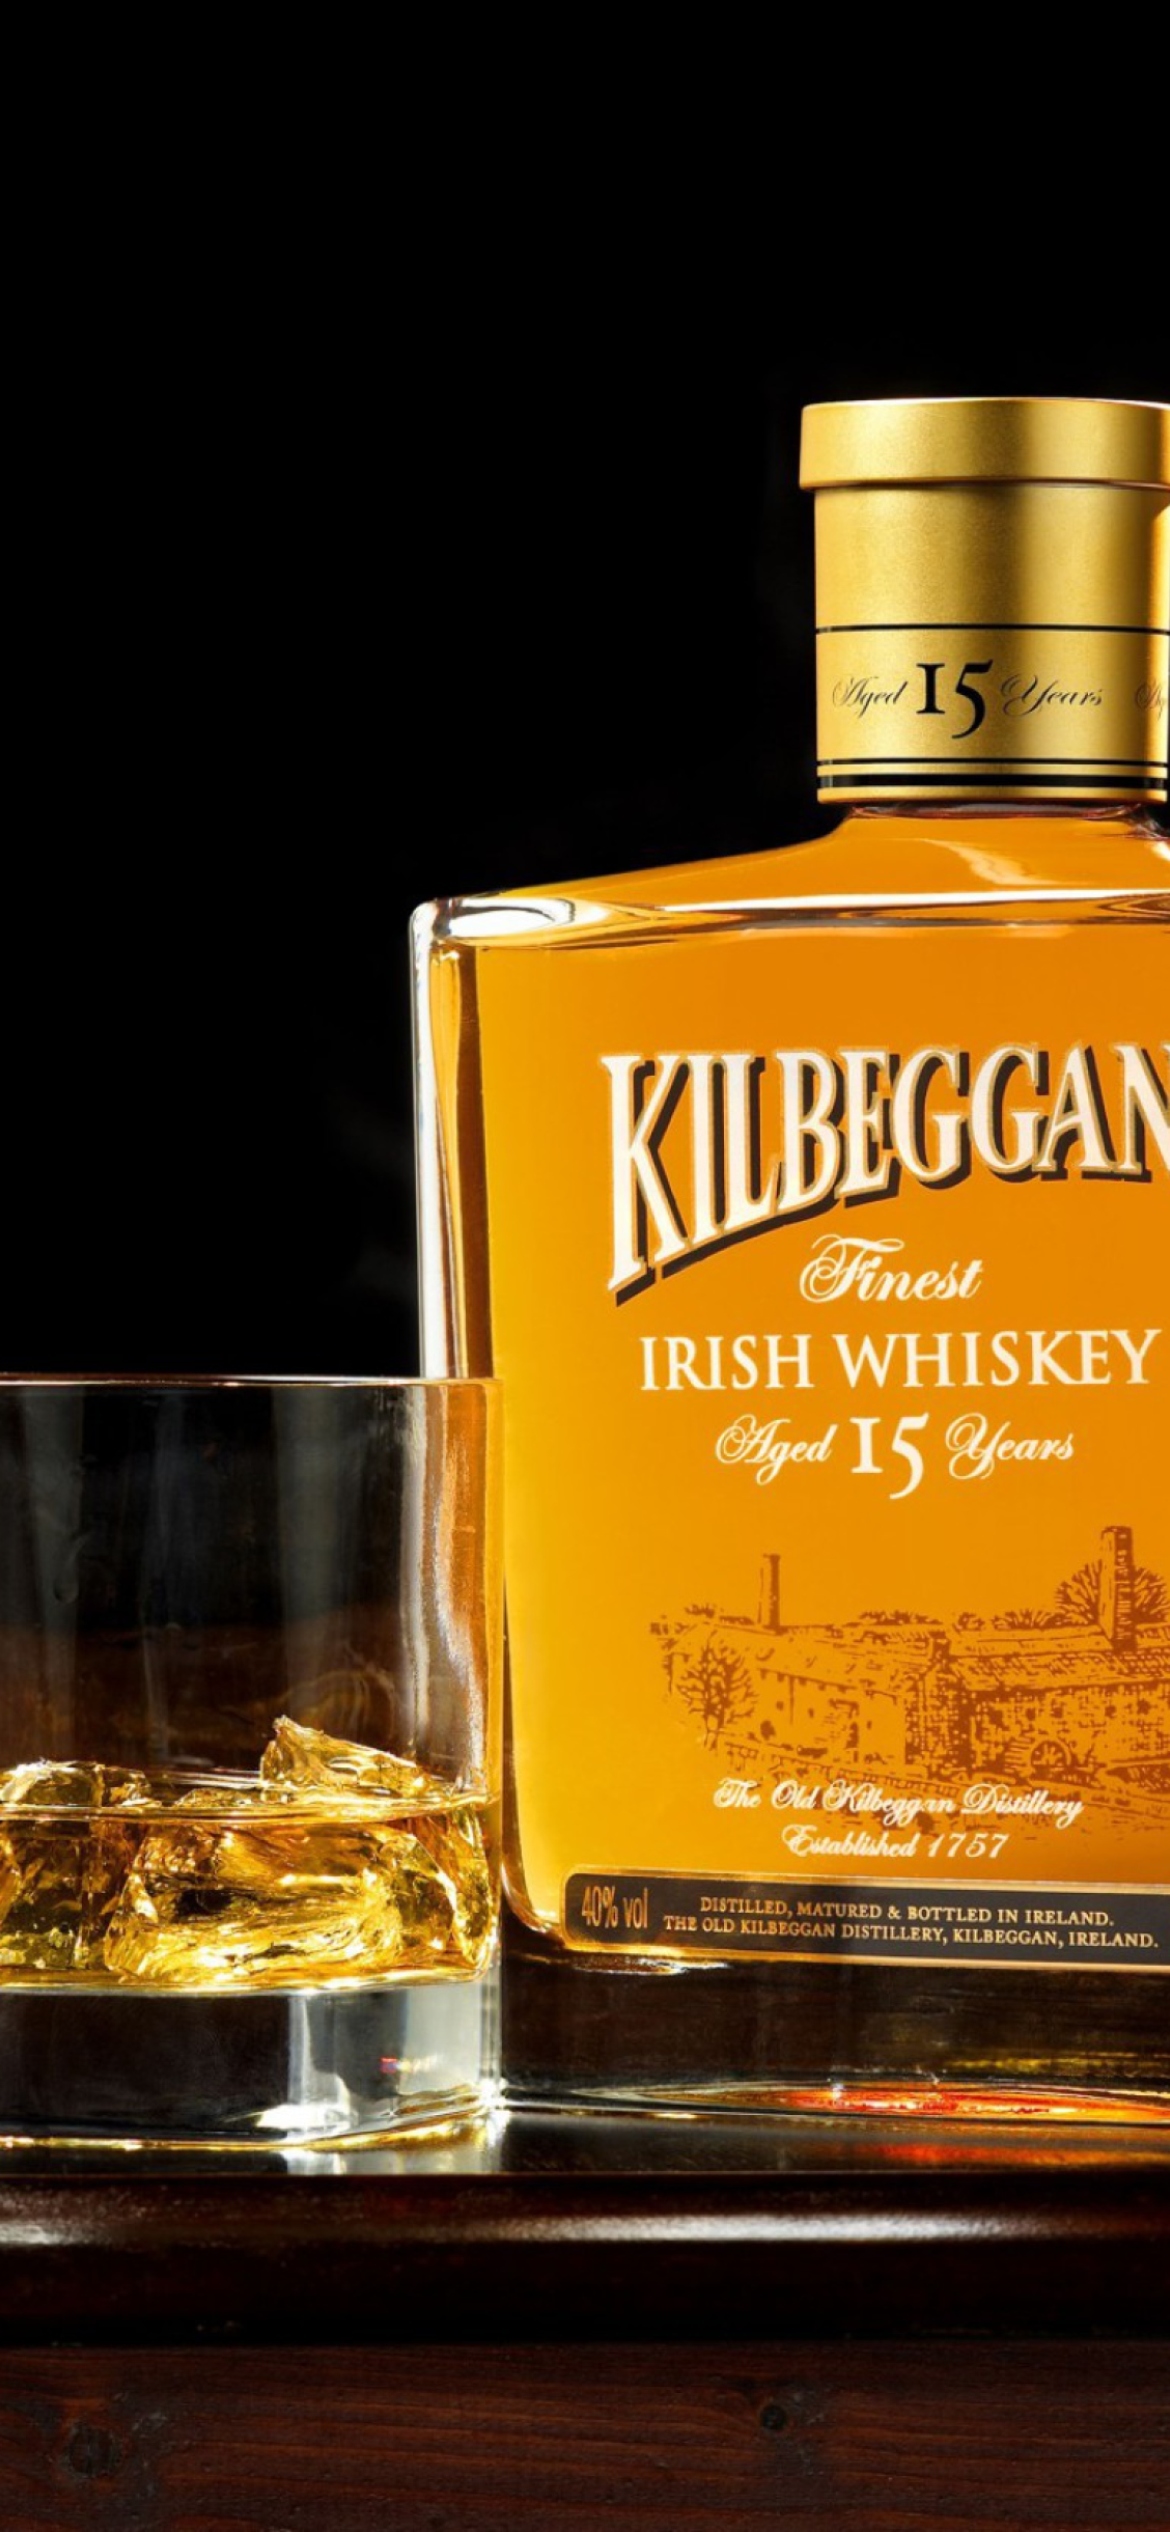 Sfondi Kilbeggan - Irish Whiskey 1170x2532